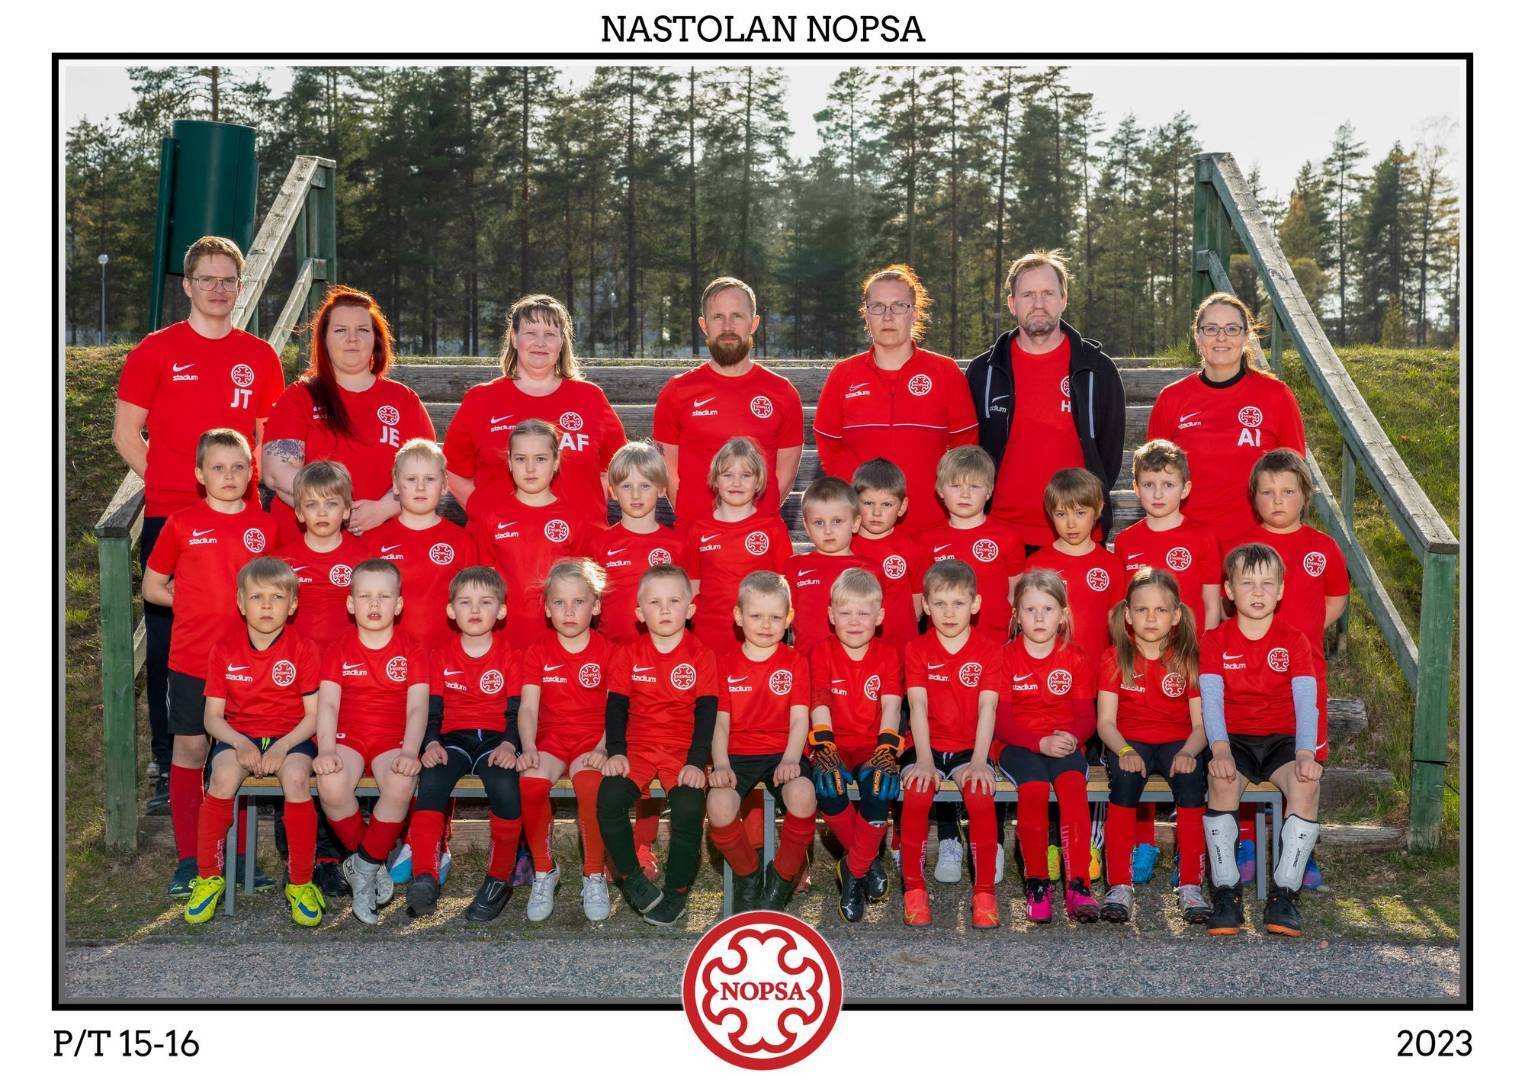 Tervetuloa Nopsan Pojat/ Tytöt 2015-2016 joukkueen sivulle. 